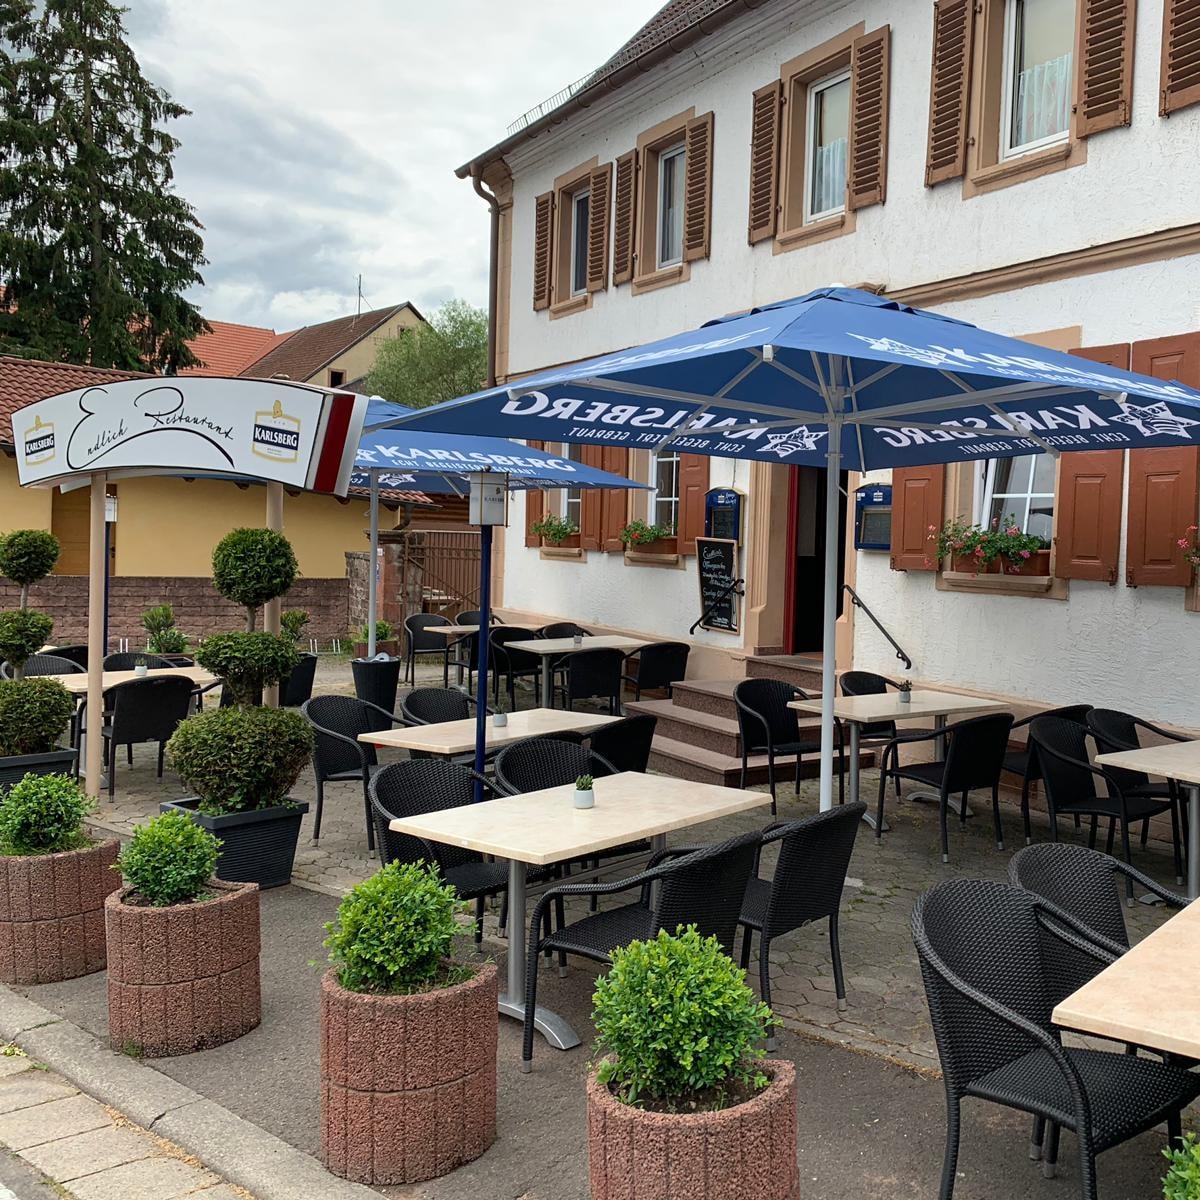 Restaurant "Hotel Peter Raisch" in  Steinwenden